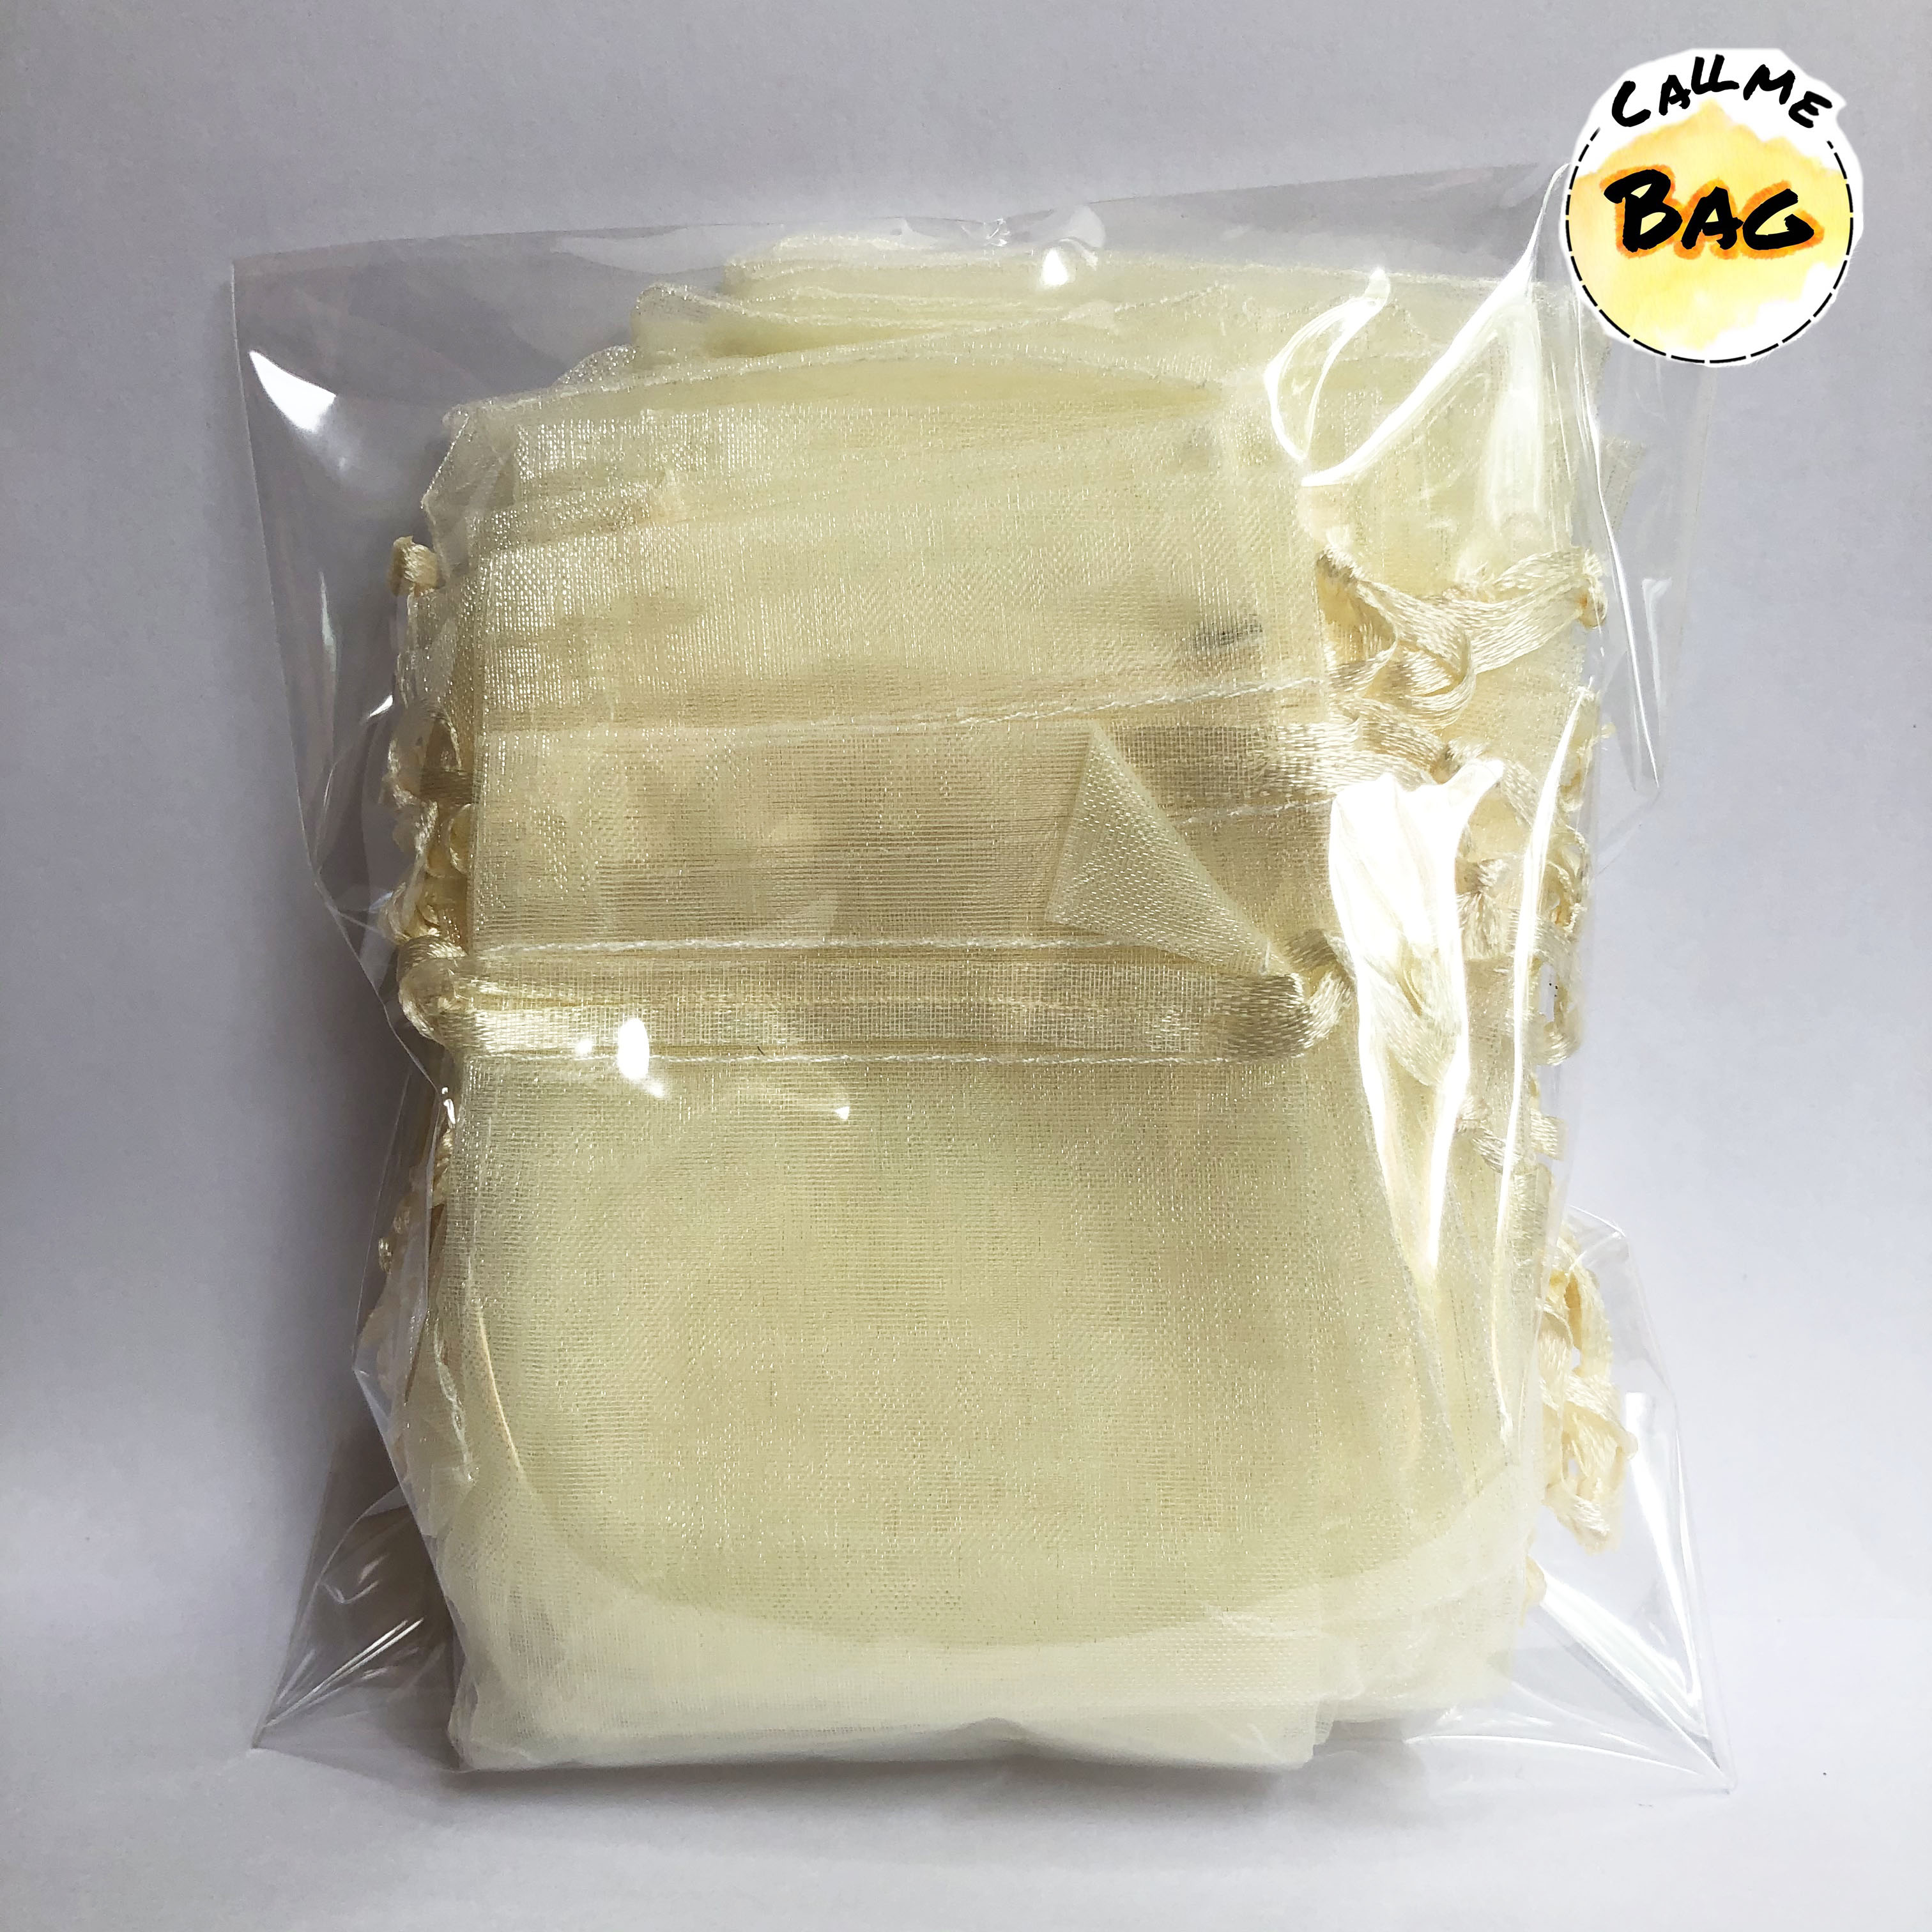 ถุงผ้าแก้ว 13x 18CM แพ็ค(50ใบ) ) gauze bag ถุงผ้า ถุงผ้าไหมแก้ว ถุงใส่ของขวัญ ถุงผ้าหูรูด ถุงใส่ของชำร่วย พร้อมส่ง